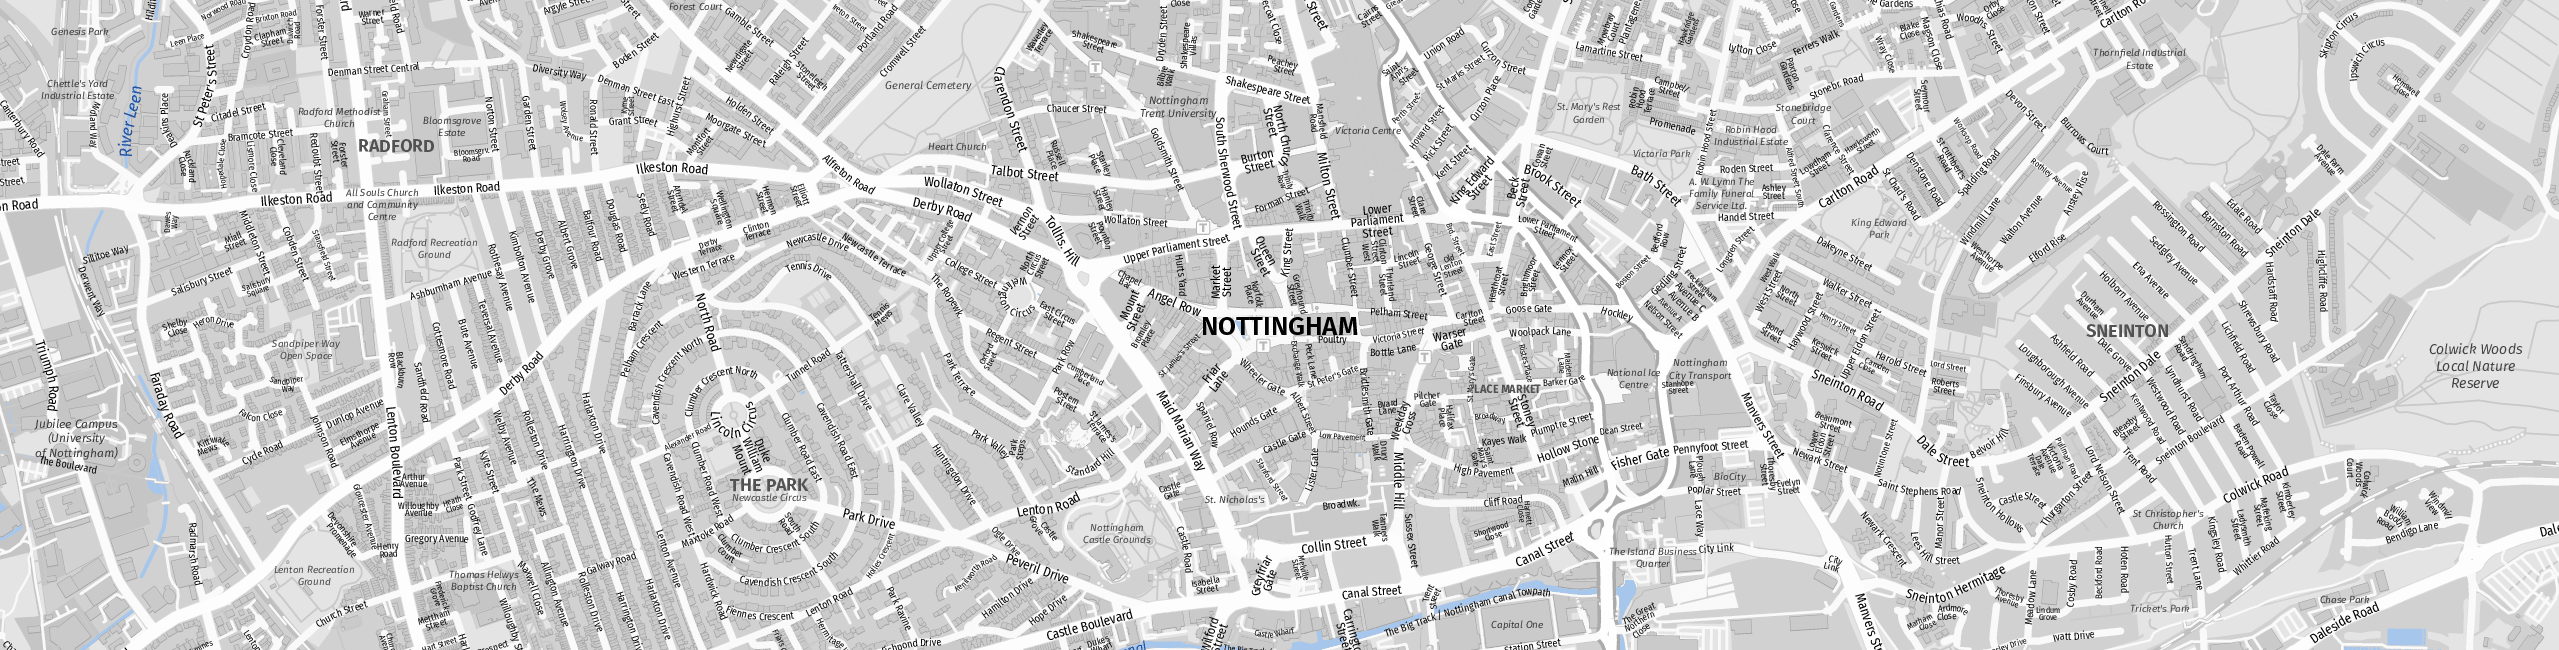 Stadtplan Nottingham zum Downloaden.